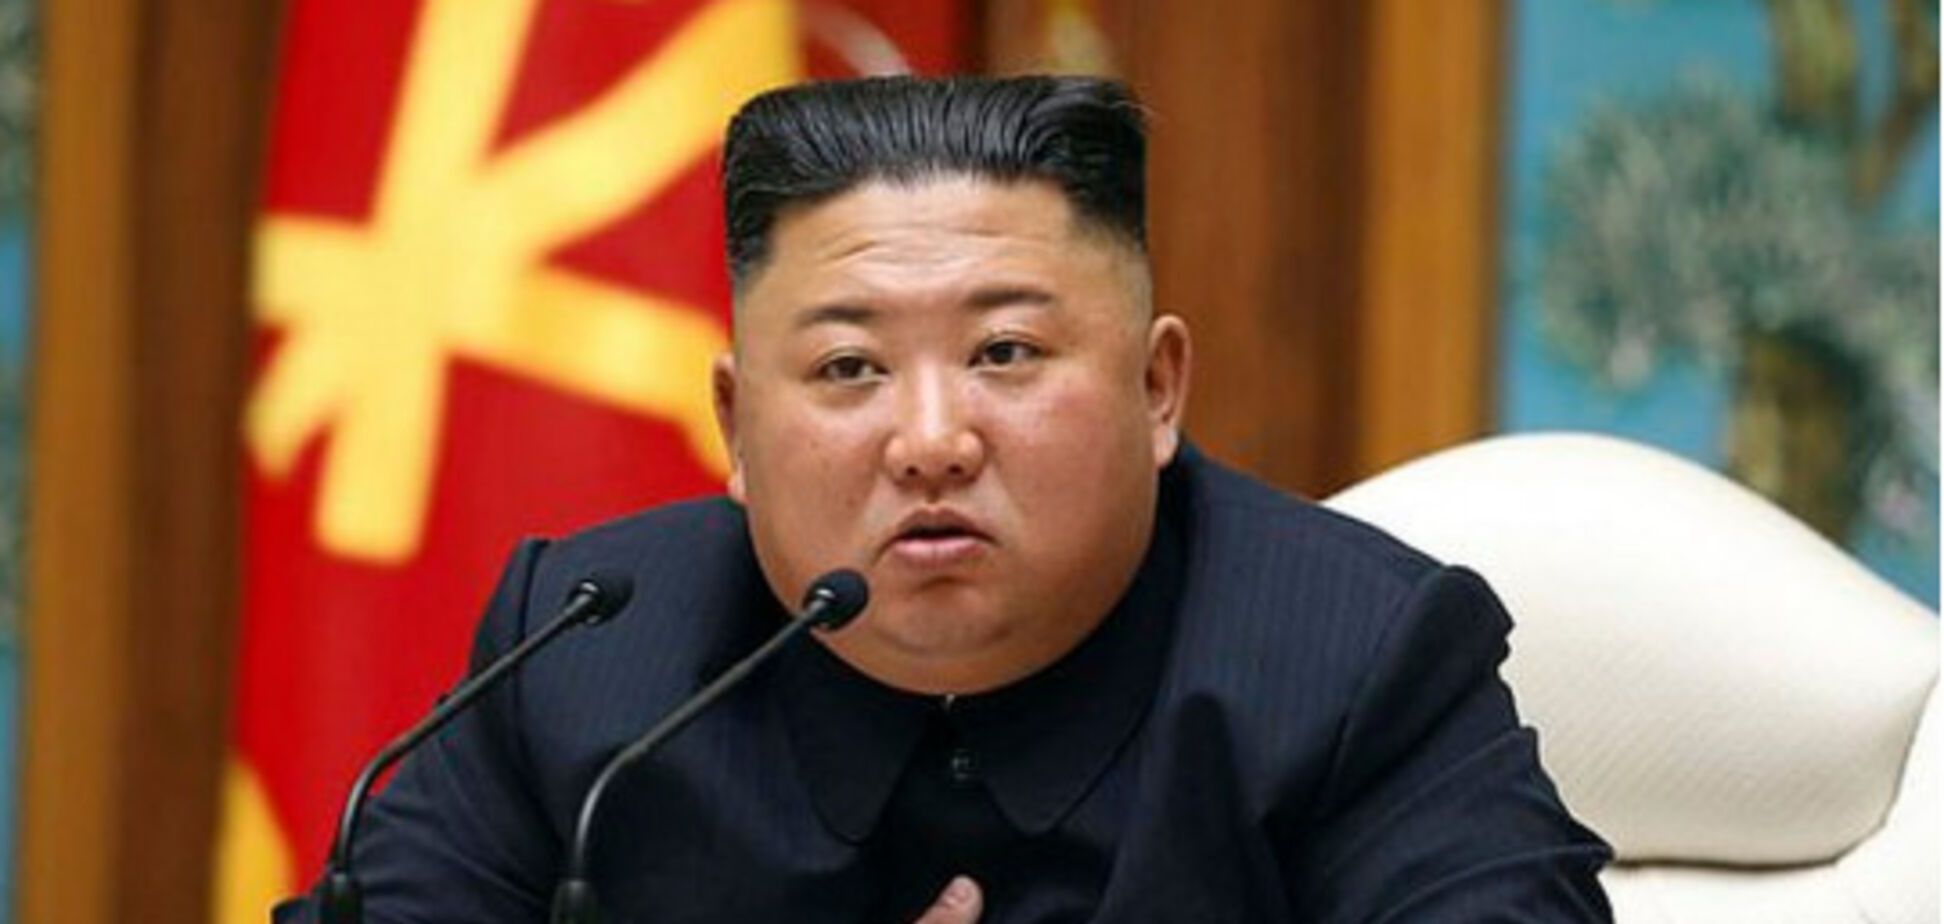 Ким Чен Ын болен: разведка США начала расследование